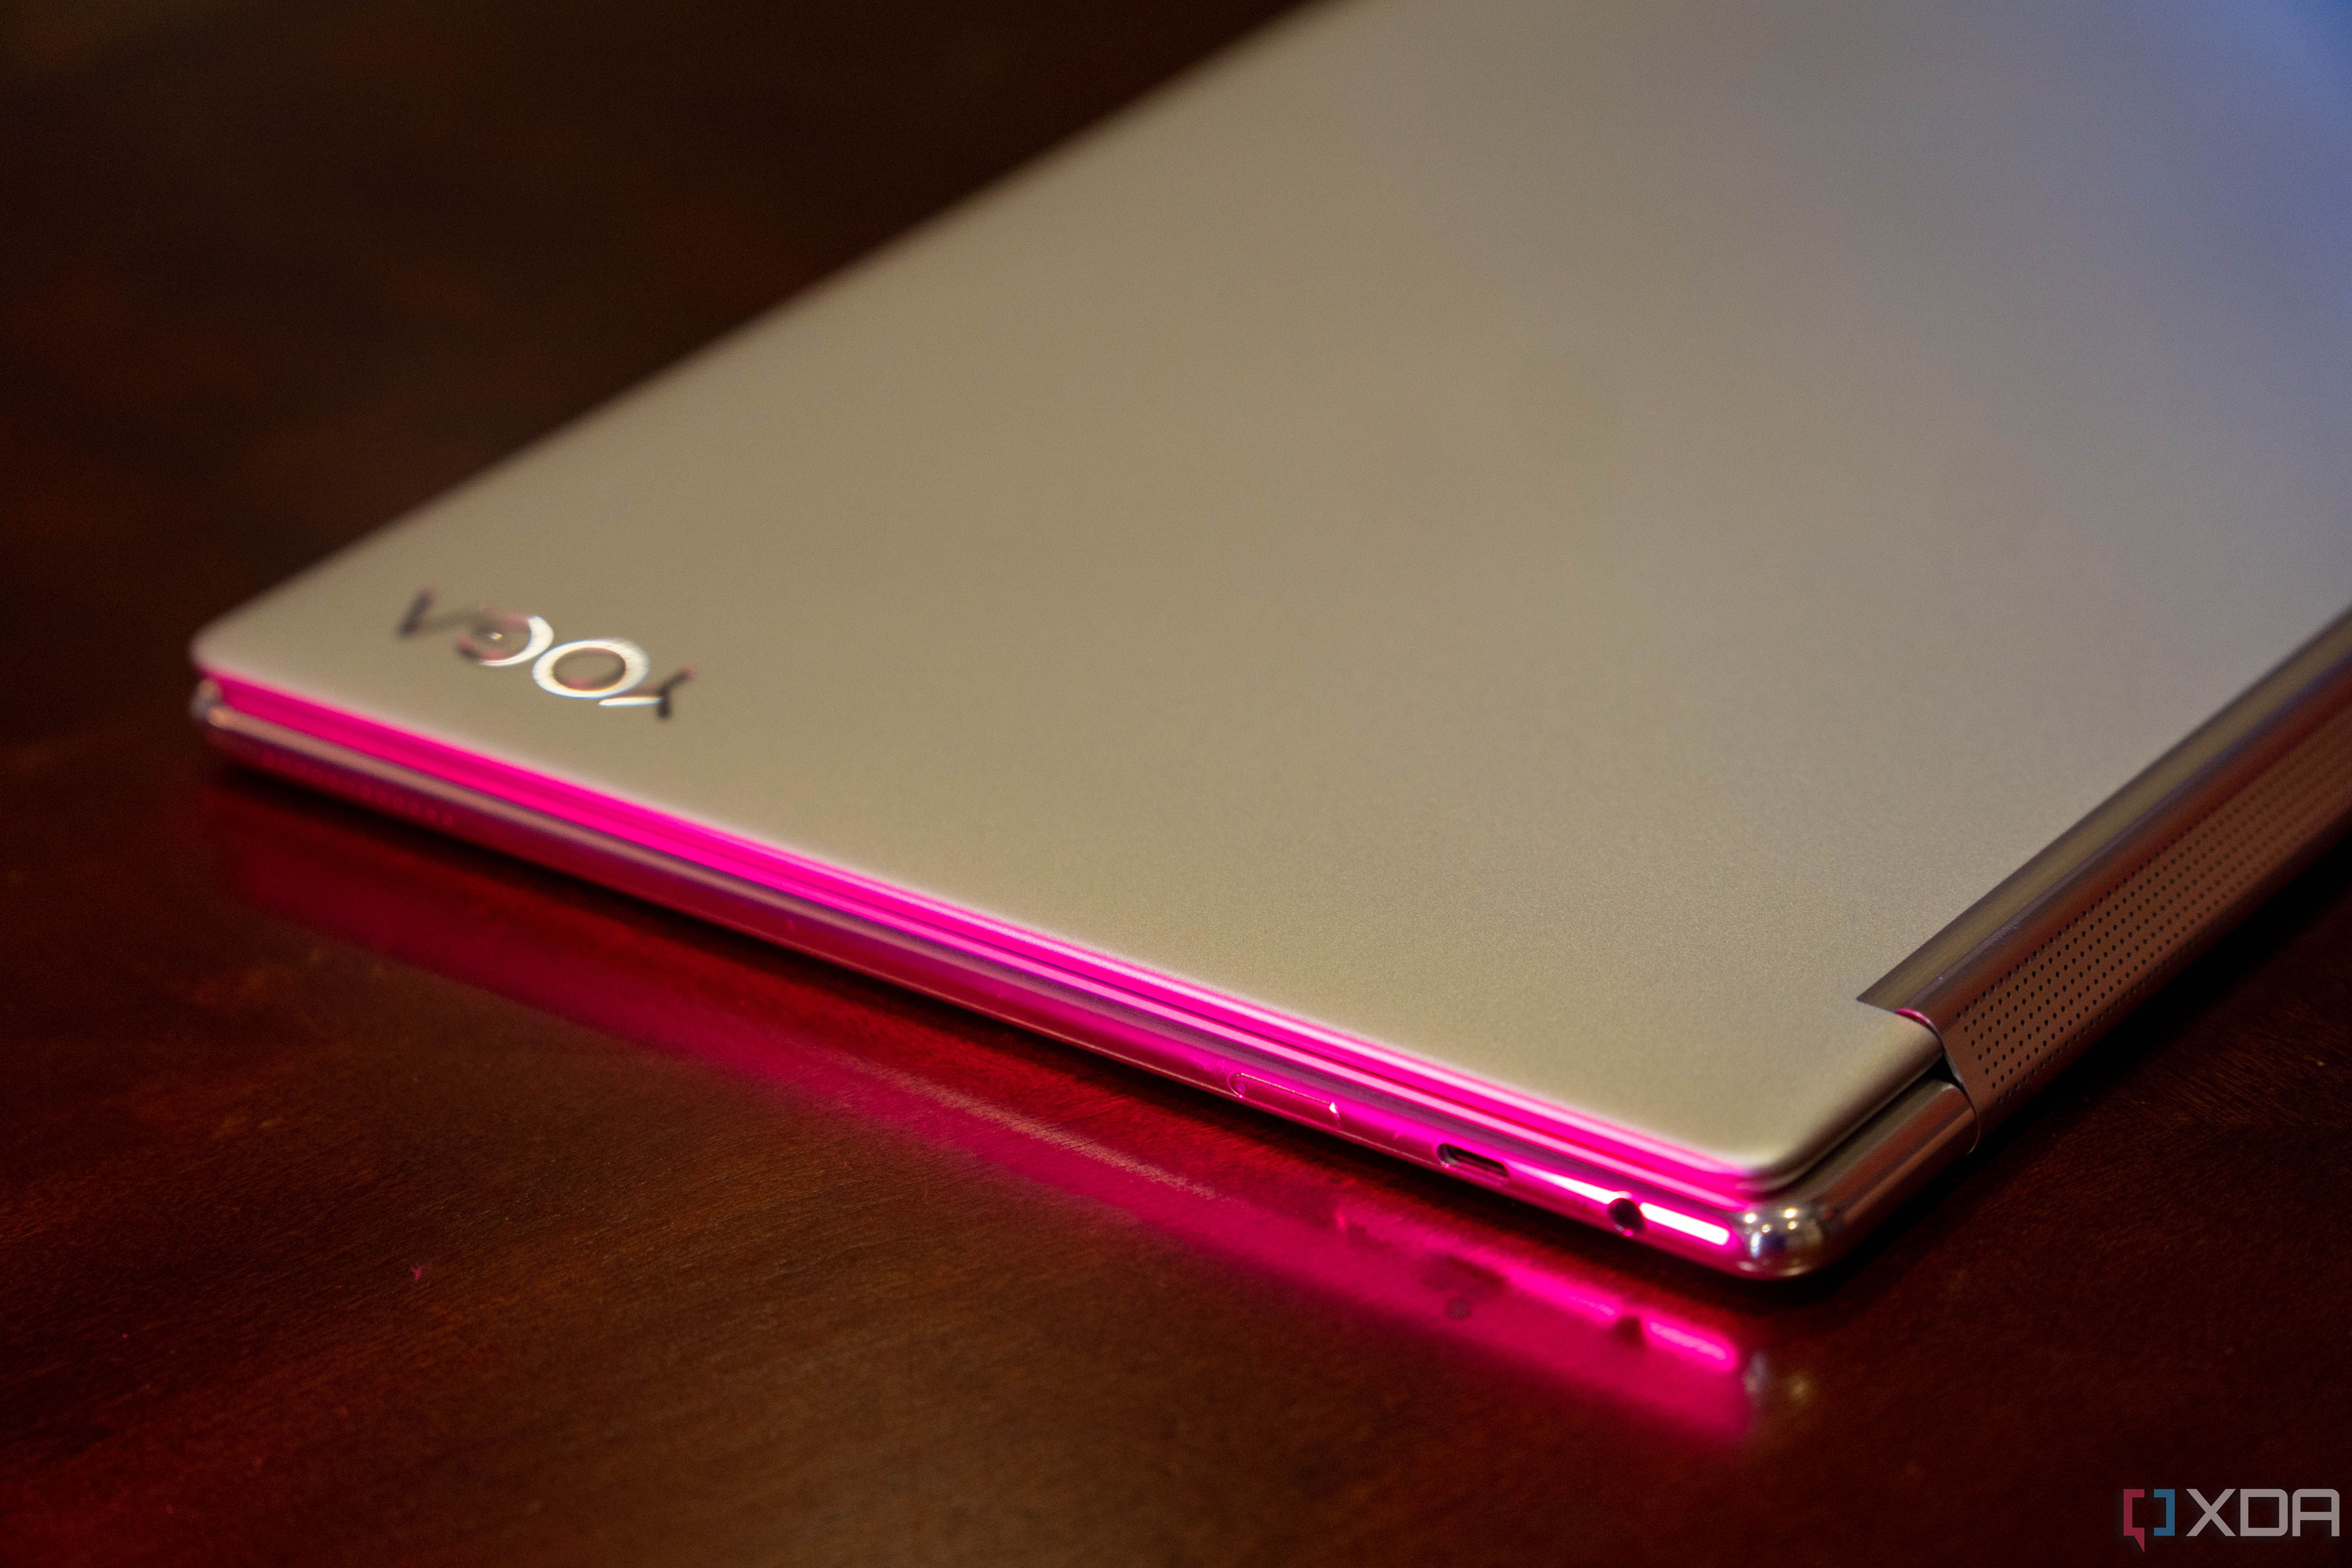 Angled view of Lenovo Yoga 9i laptop with pink lighting